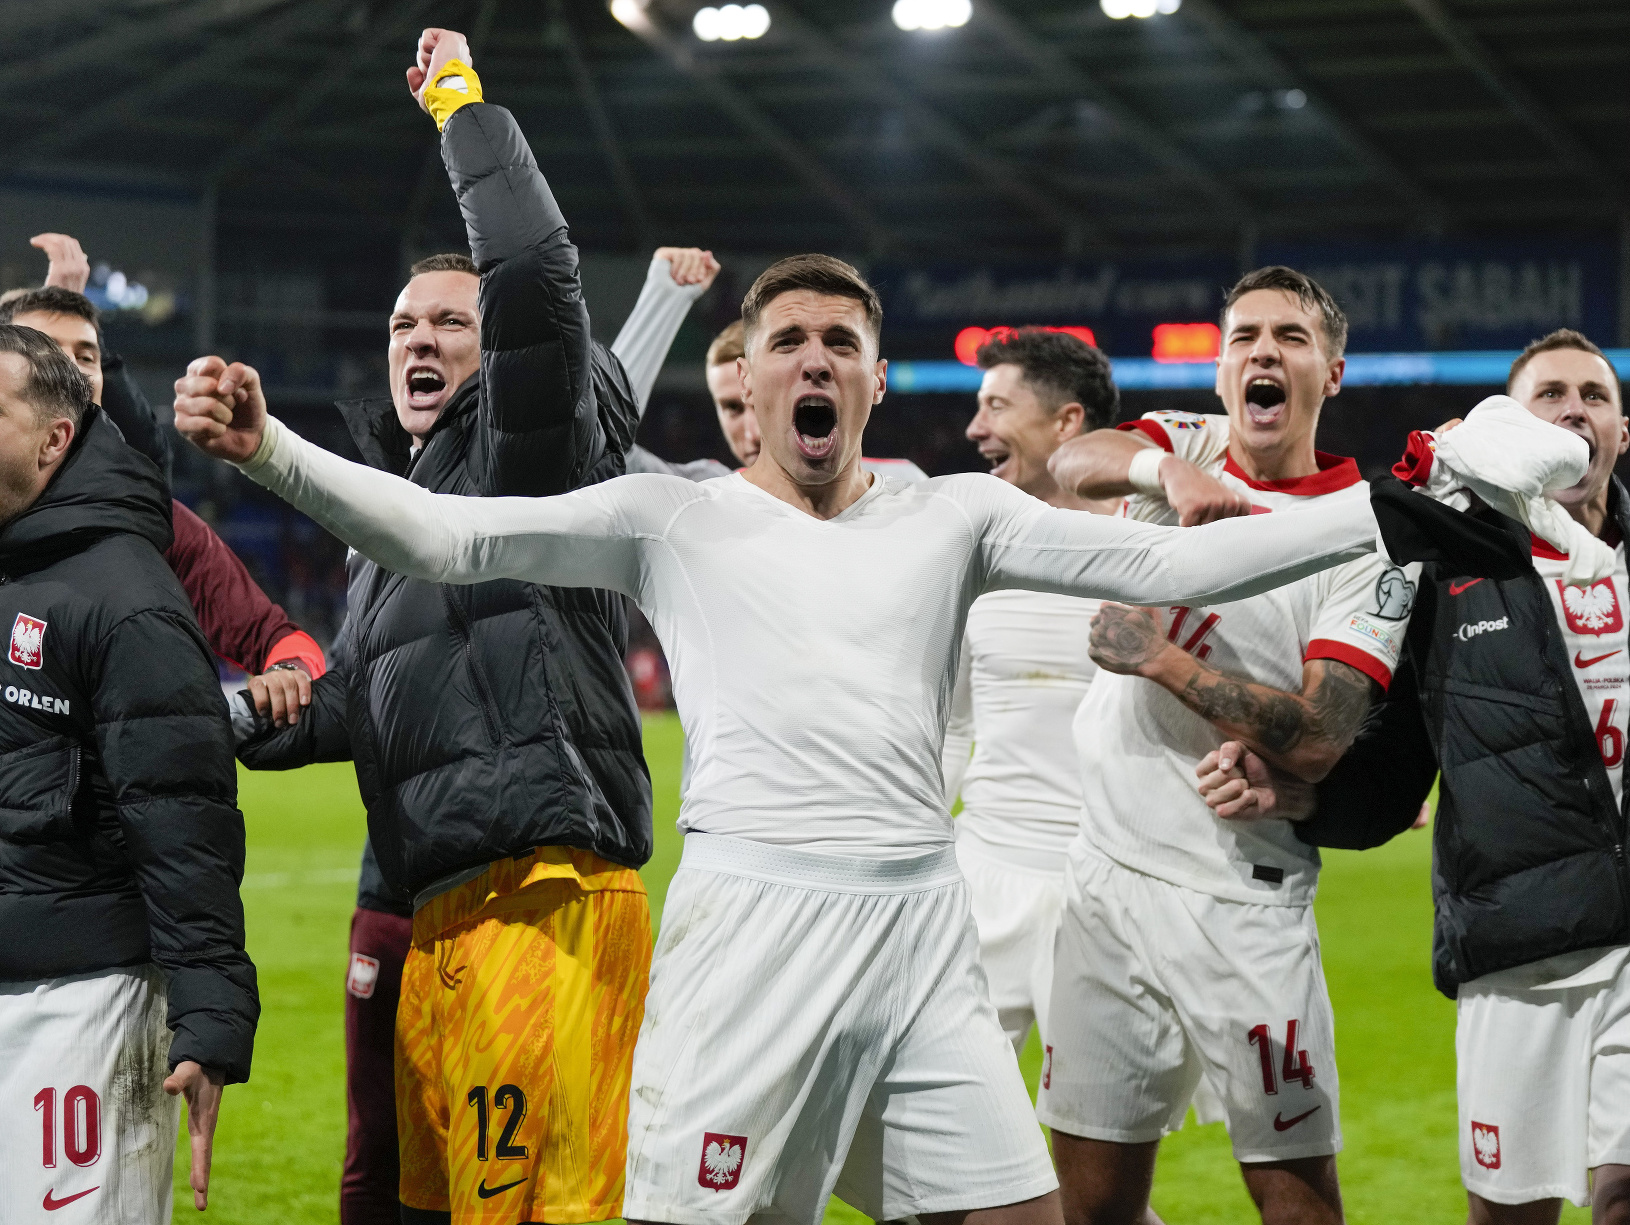 Futbalisti Poľska oslavujú postup